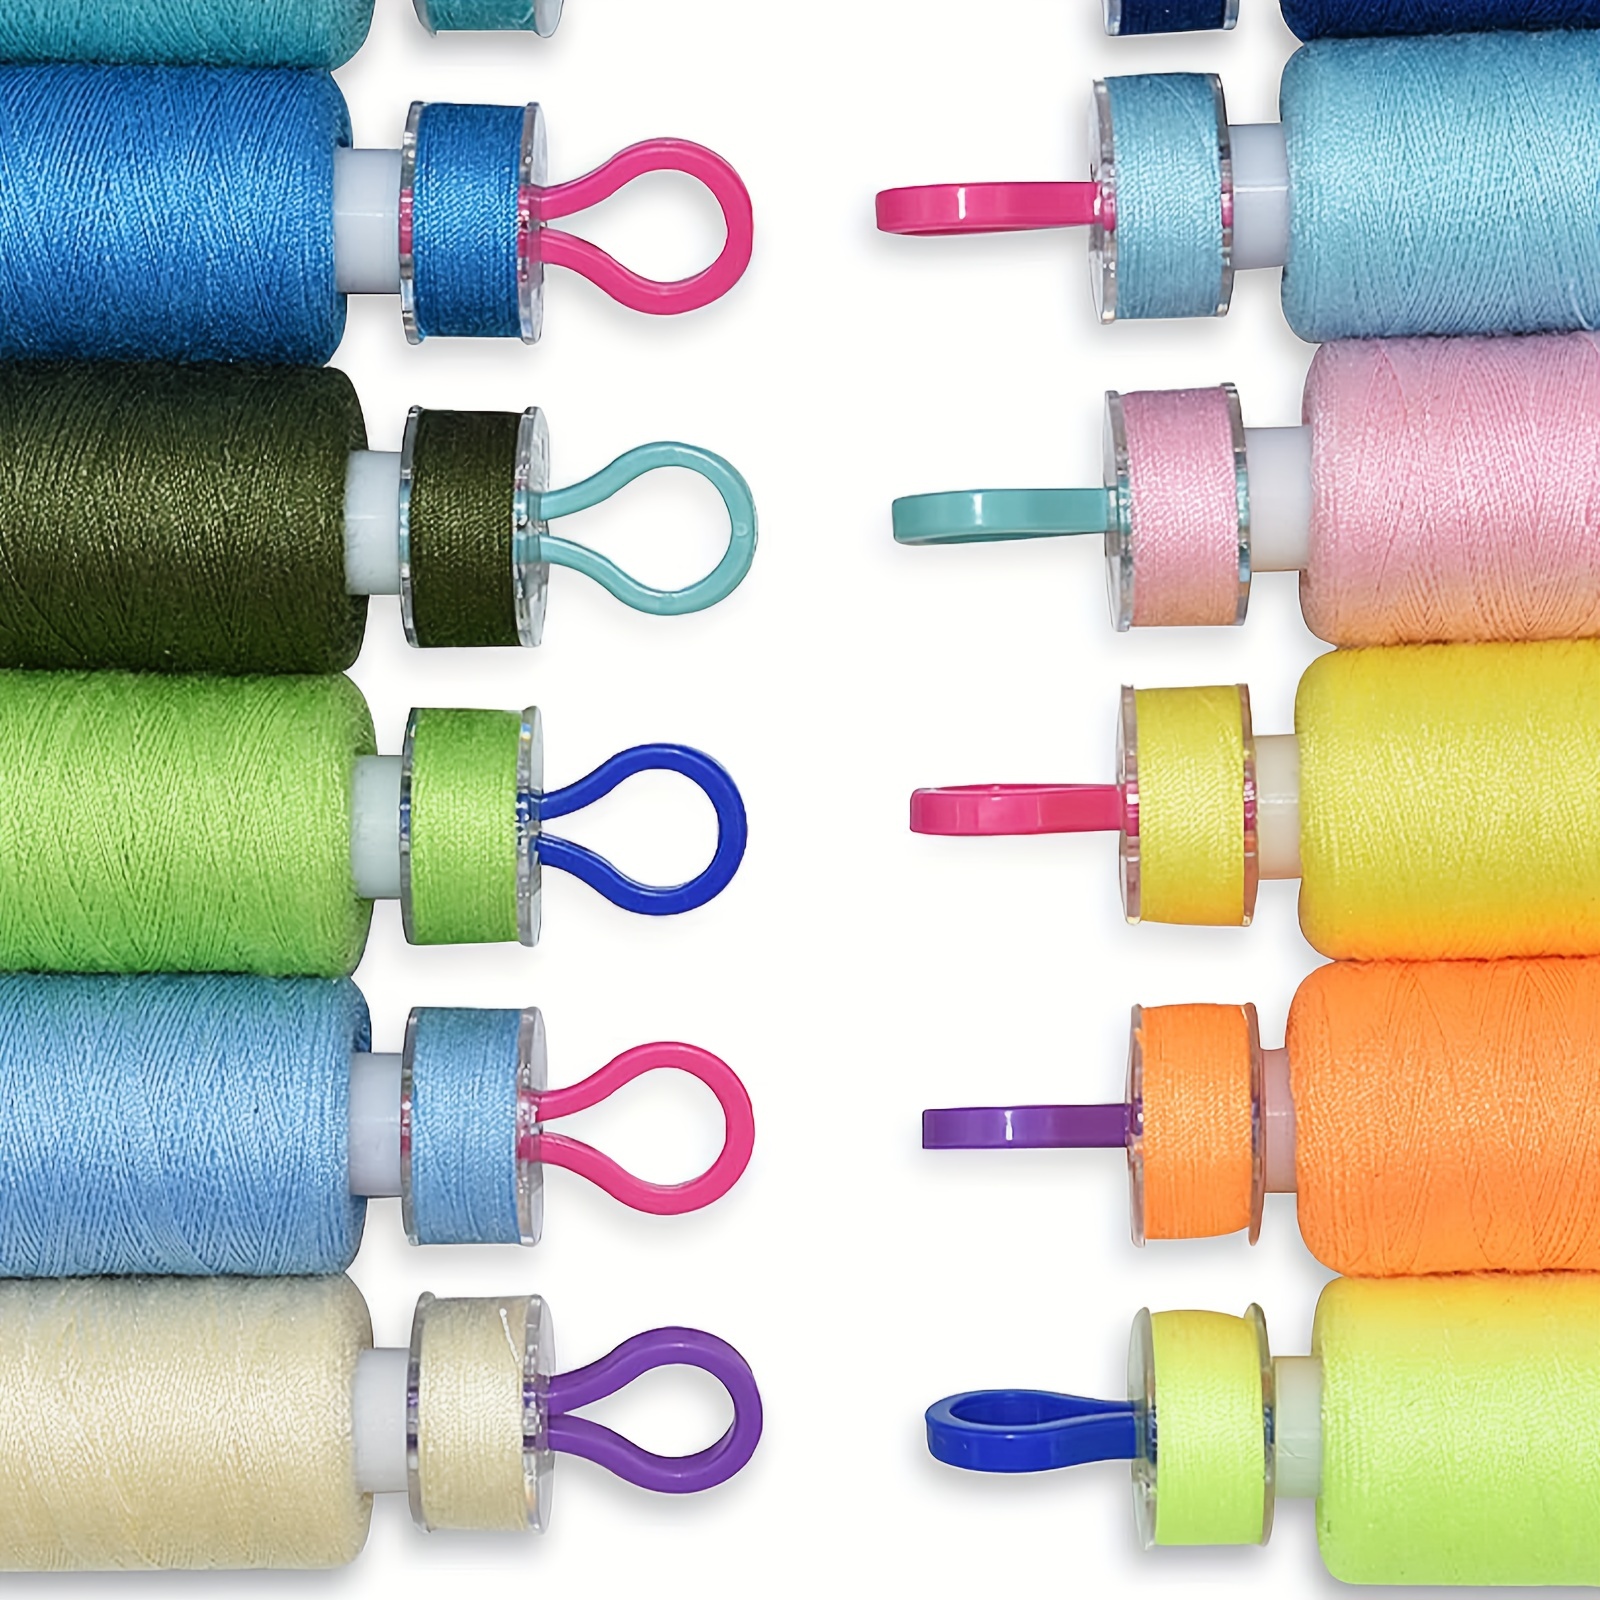 Sewing Machine Bobbins Multicolor Plastic Bobbins Spool for 